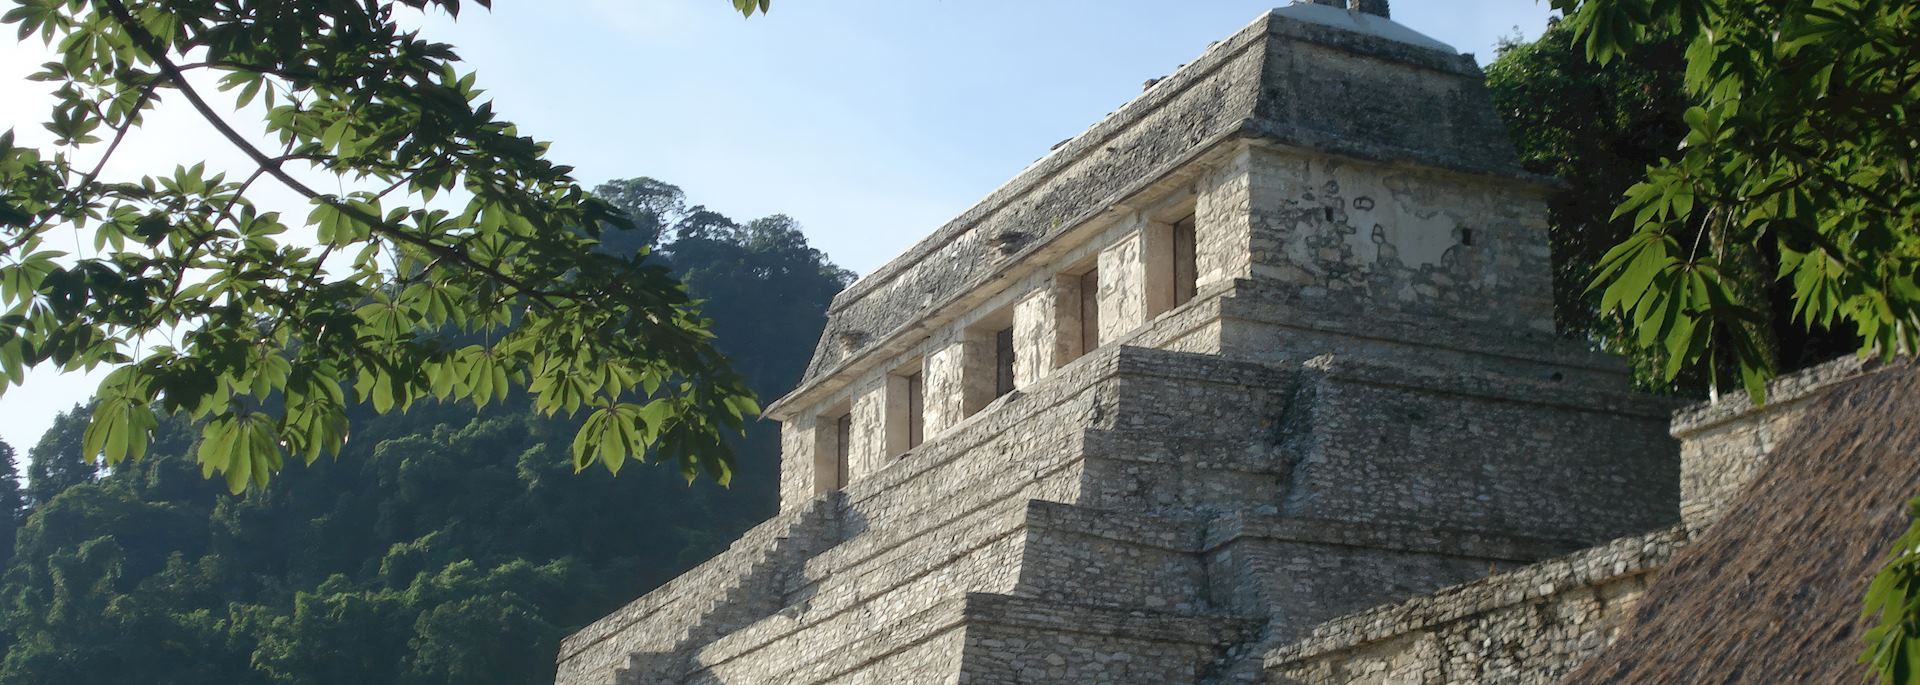 Maya pyramid at Palenque